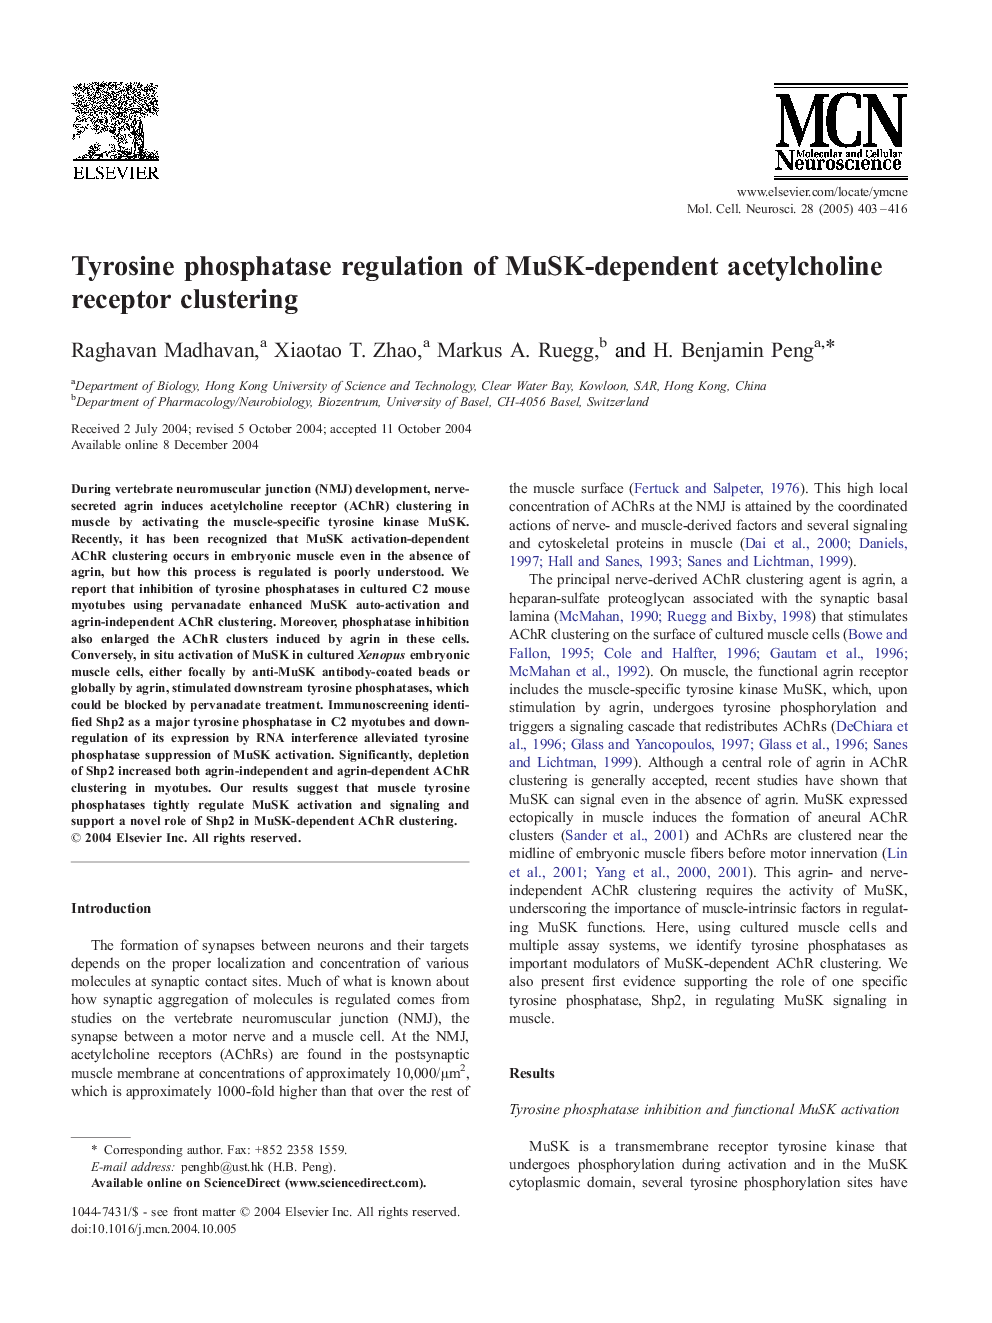 Tyrosine phosphatase regulation of MuSK-dependent acetylcholine receptor clustering